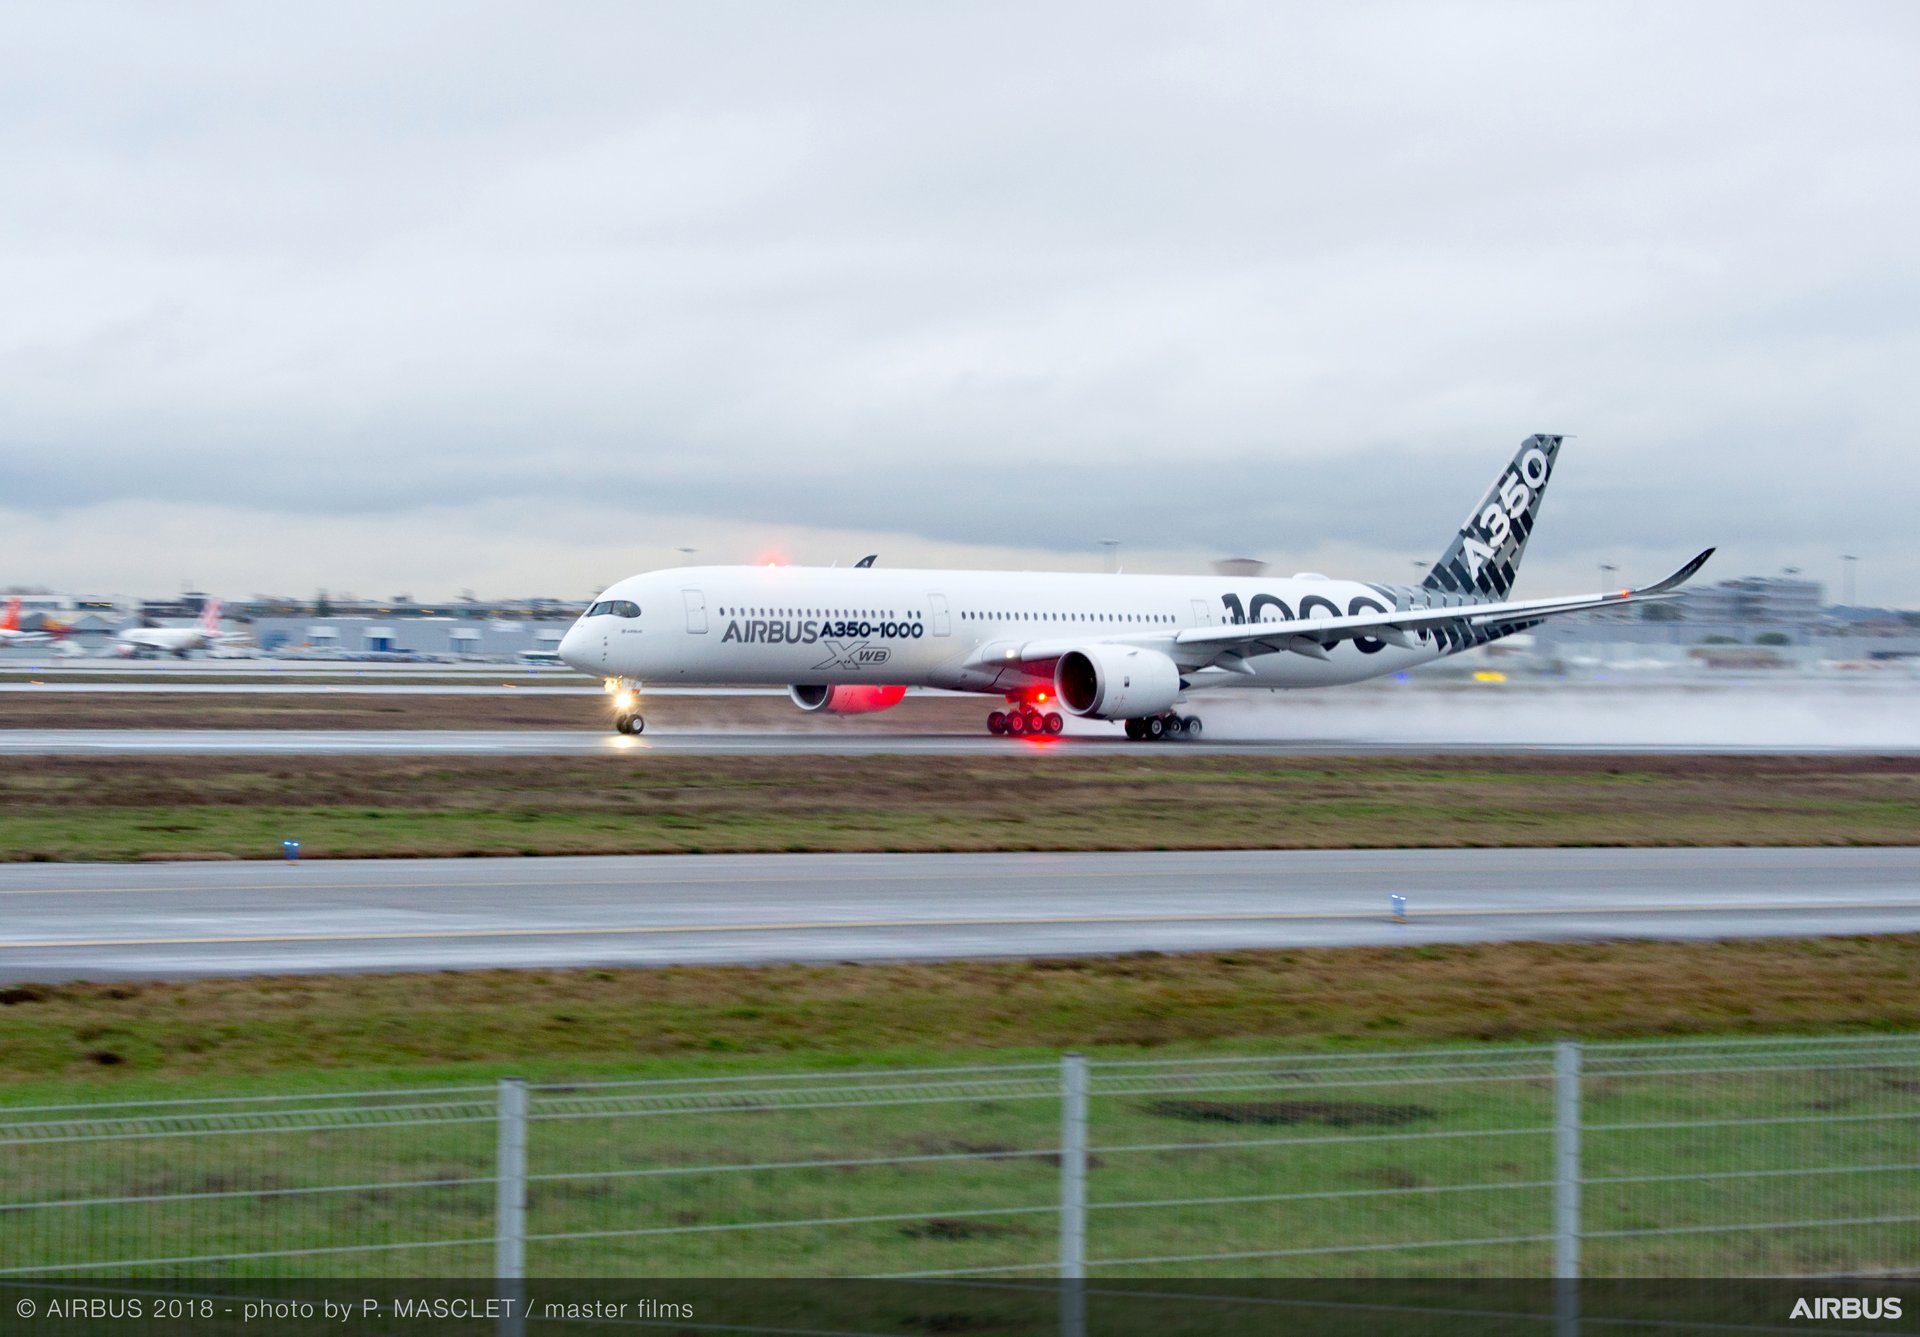 A350 1000 Demo tour take off - Travel Radar - Aviation News